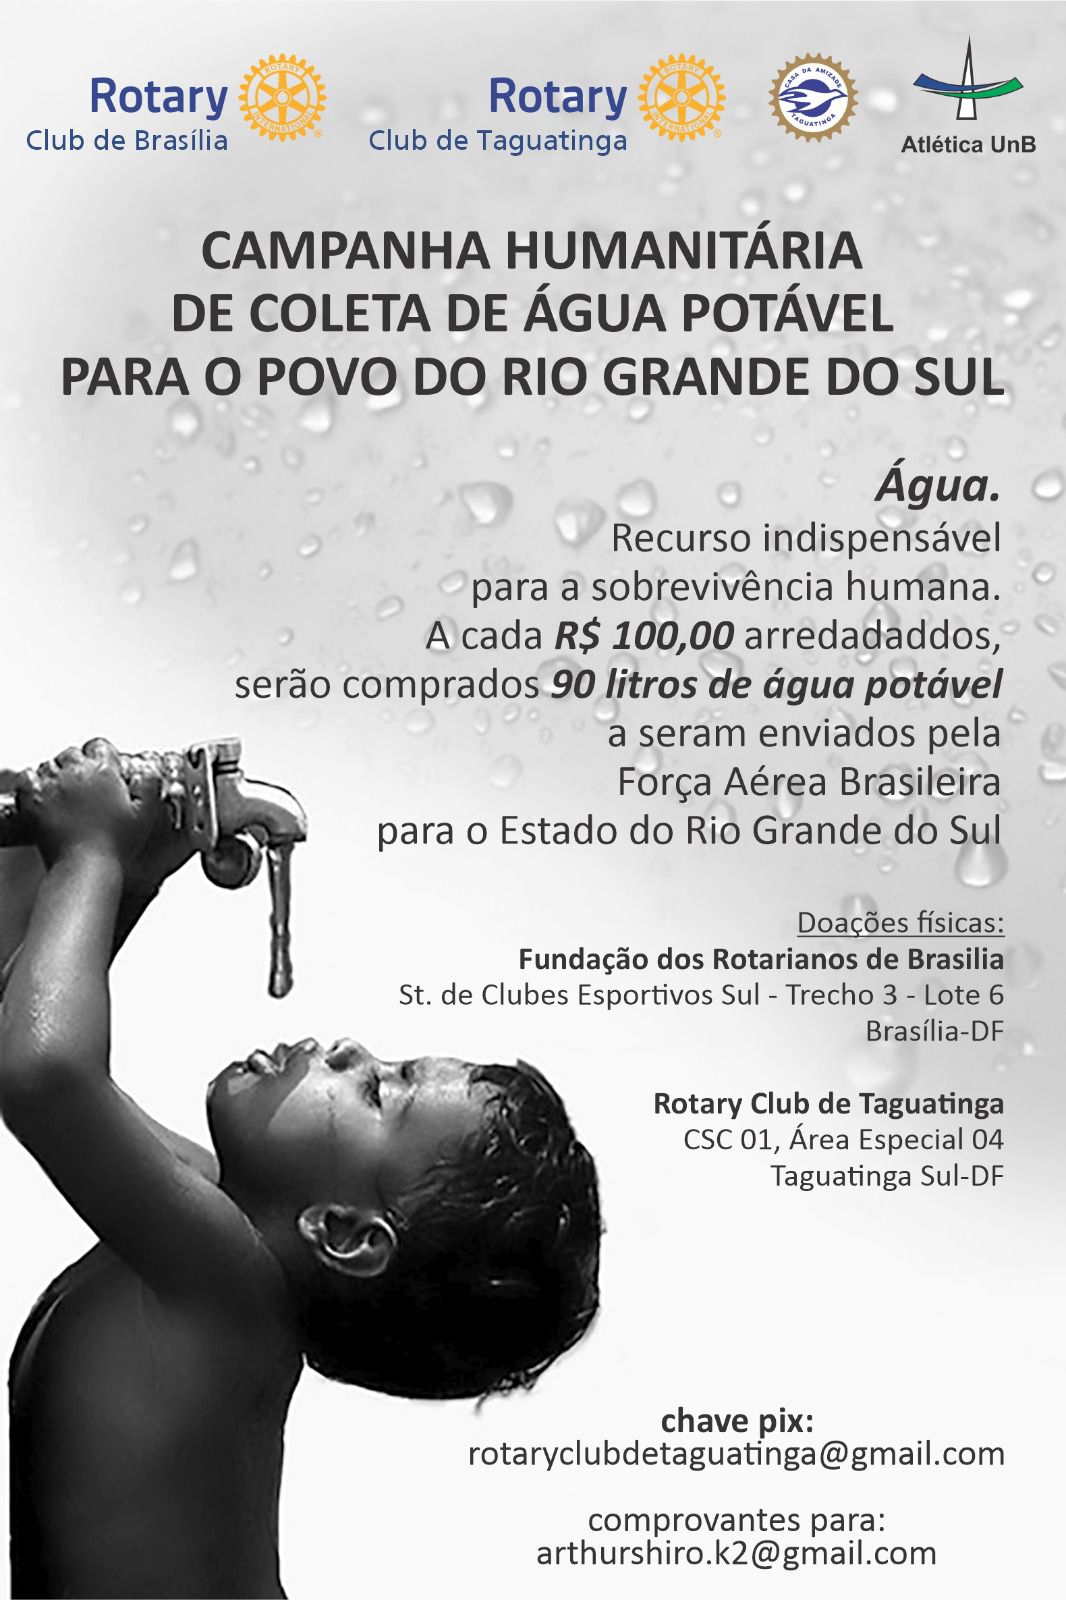 Rio Grande do Sul, doe com segurança pelo Rotary Club